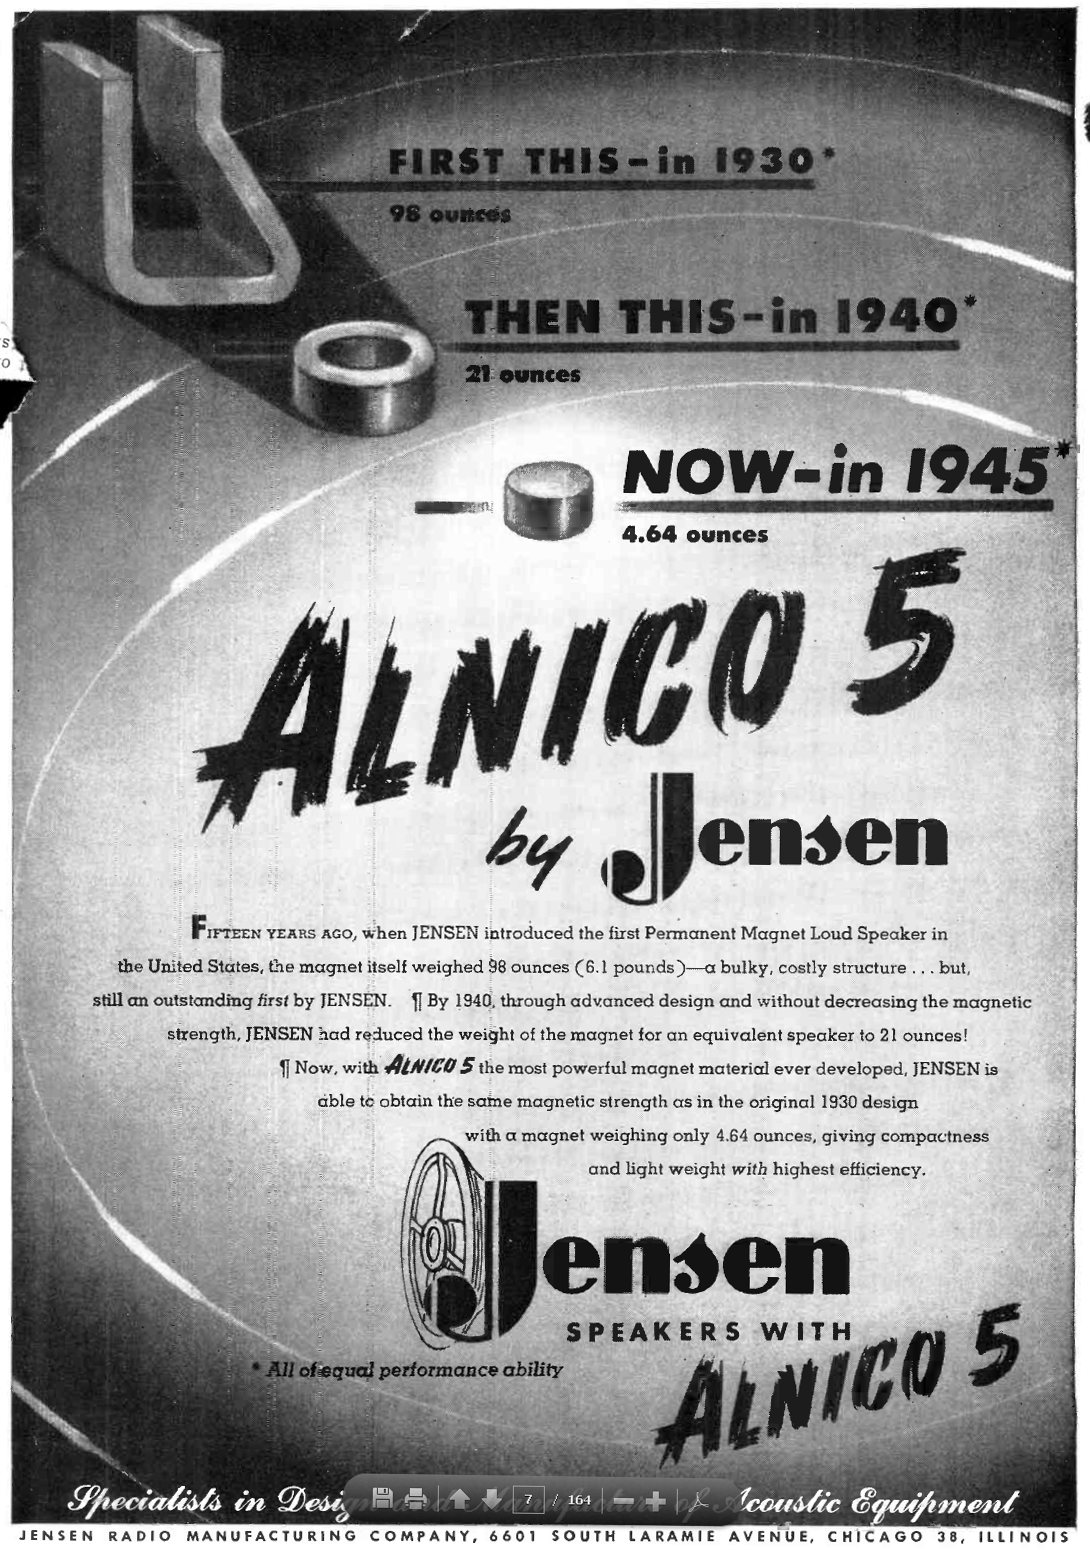 Publicité de 1945 (source wikipedia)